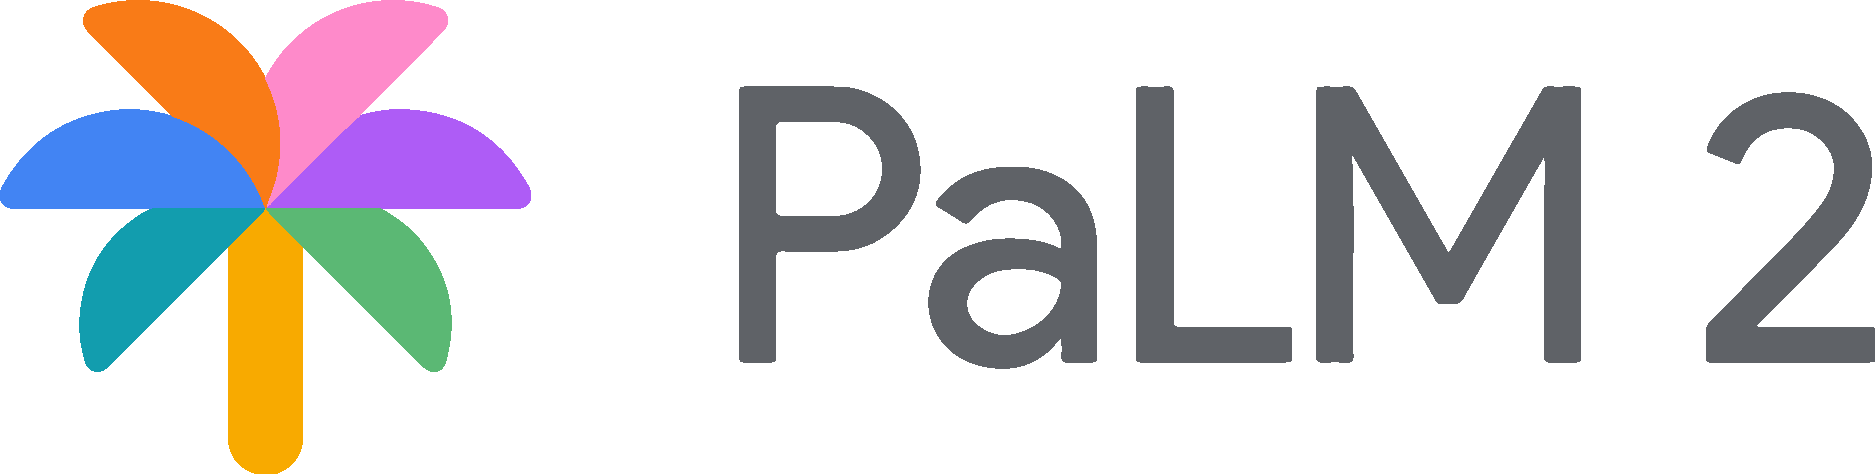 PaLM-2 Logo